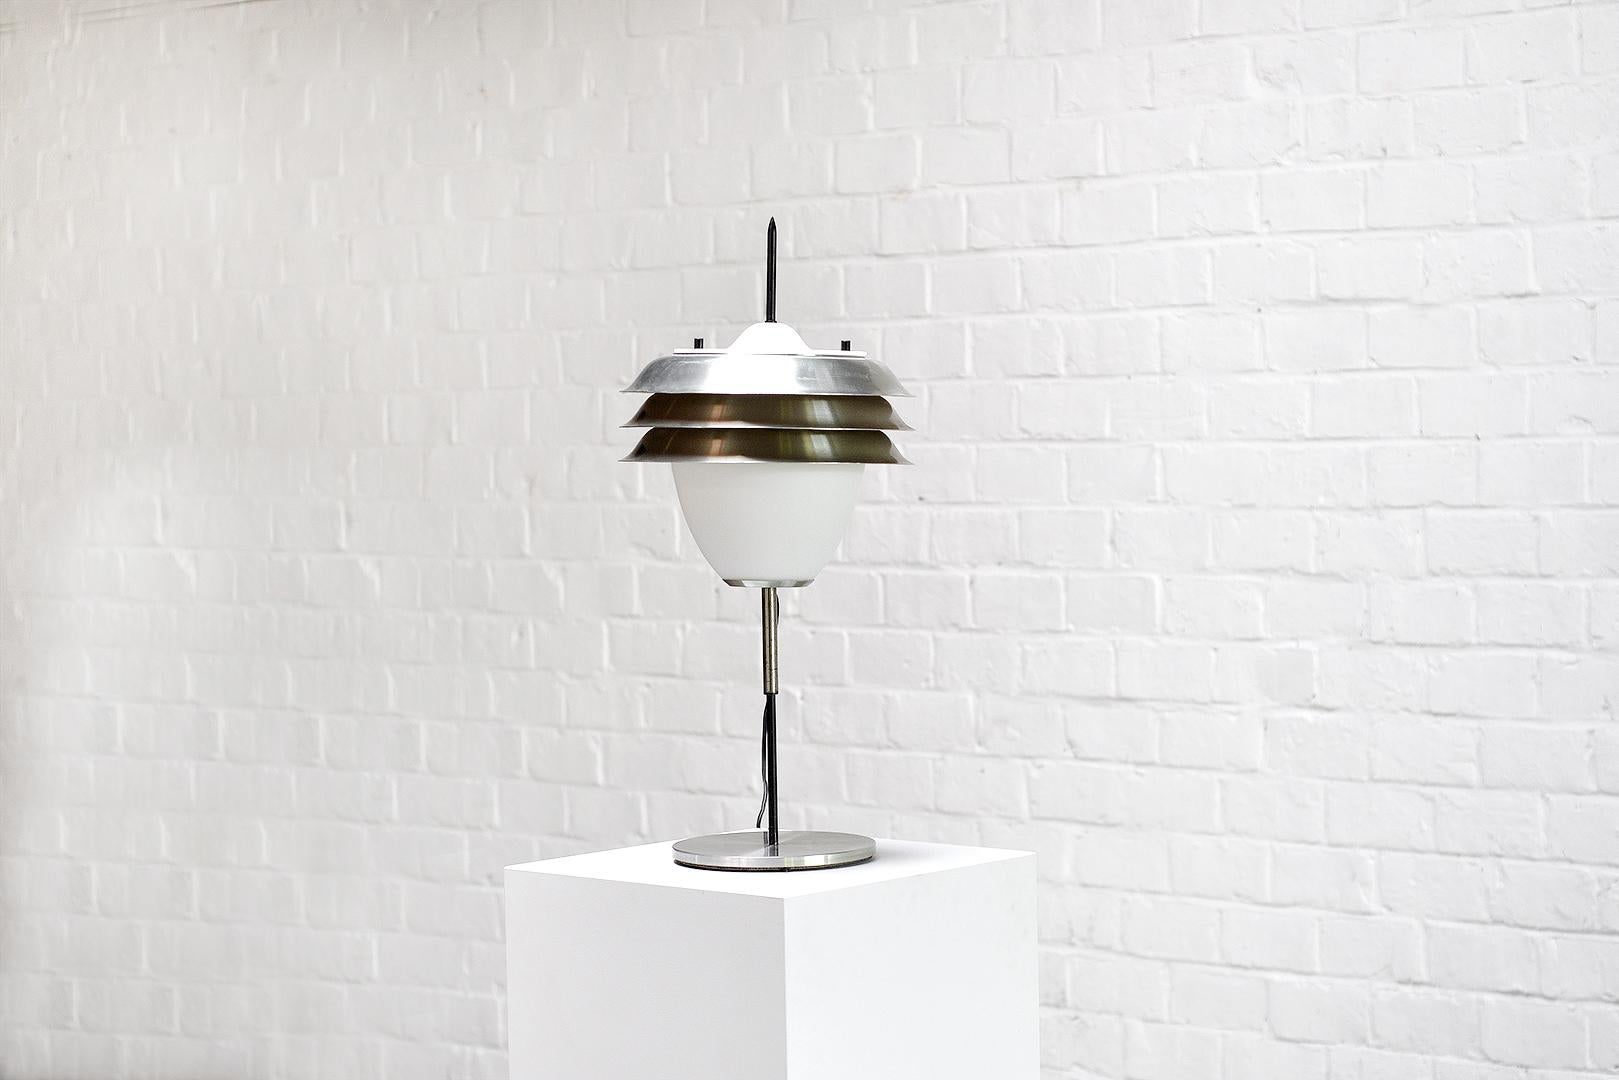 Cette lampe vintage italienne des années 1960 présente une base en acier satiné, une structure en métal noir et un grand verre opale avec trois abat-jours en métal. Un savoir-faire exceptionnel et un design intemporel. Le concepteur nous est